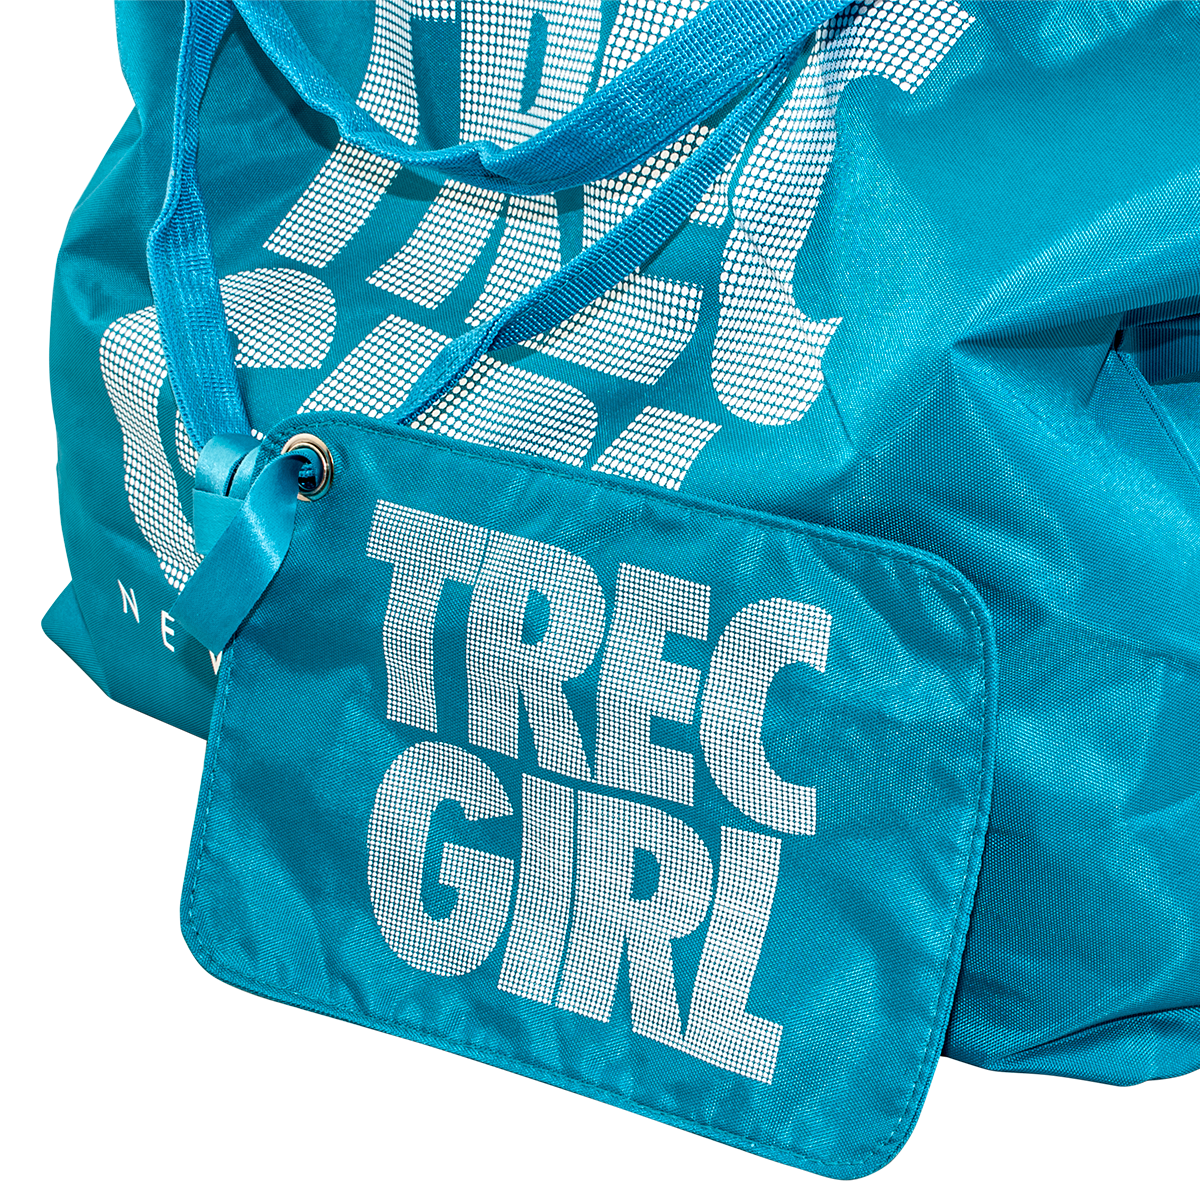 Neonowa błękitna torba sportowa TREC GIRL Glowne